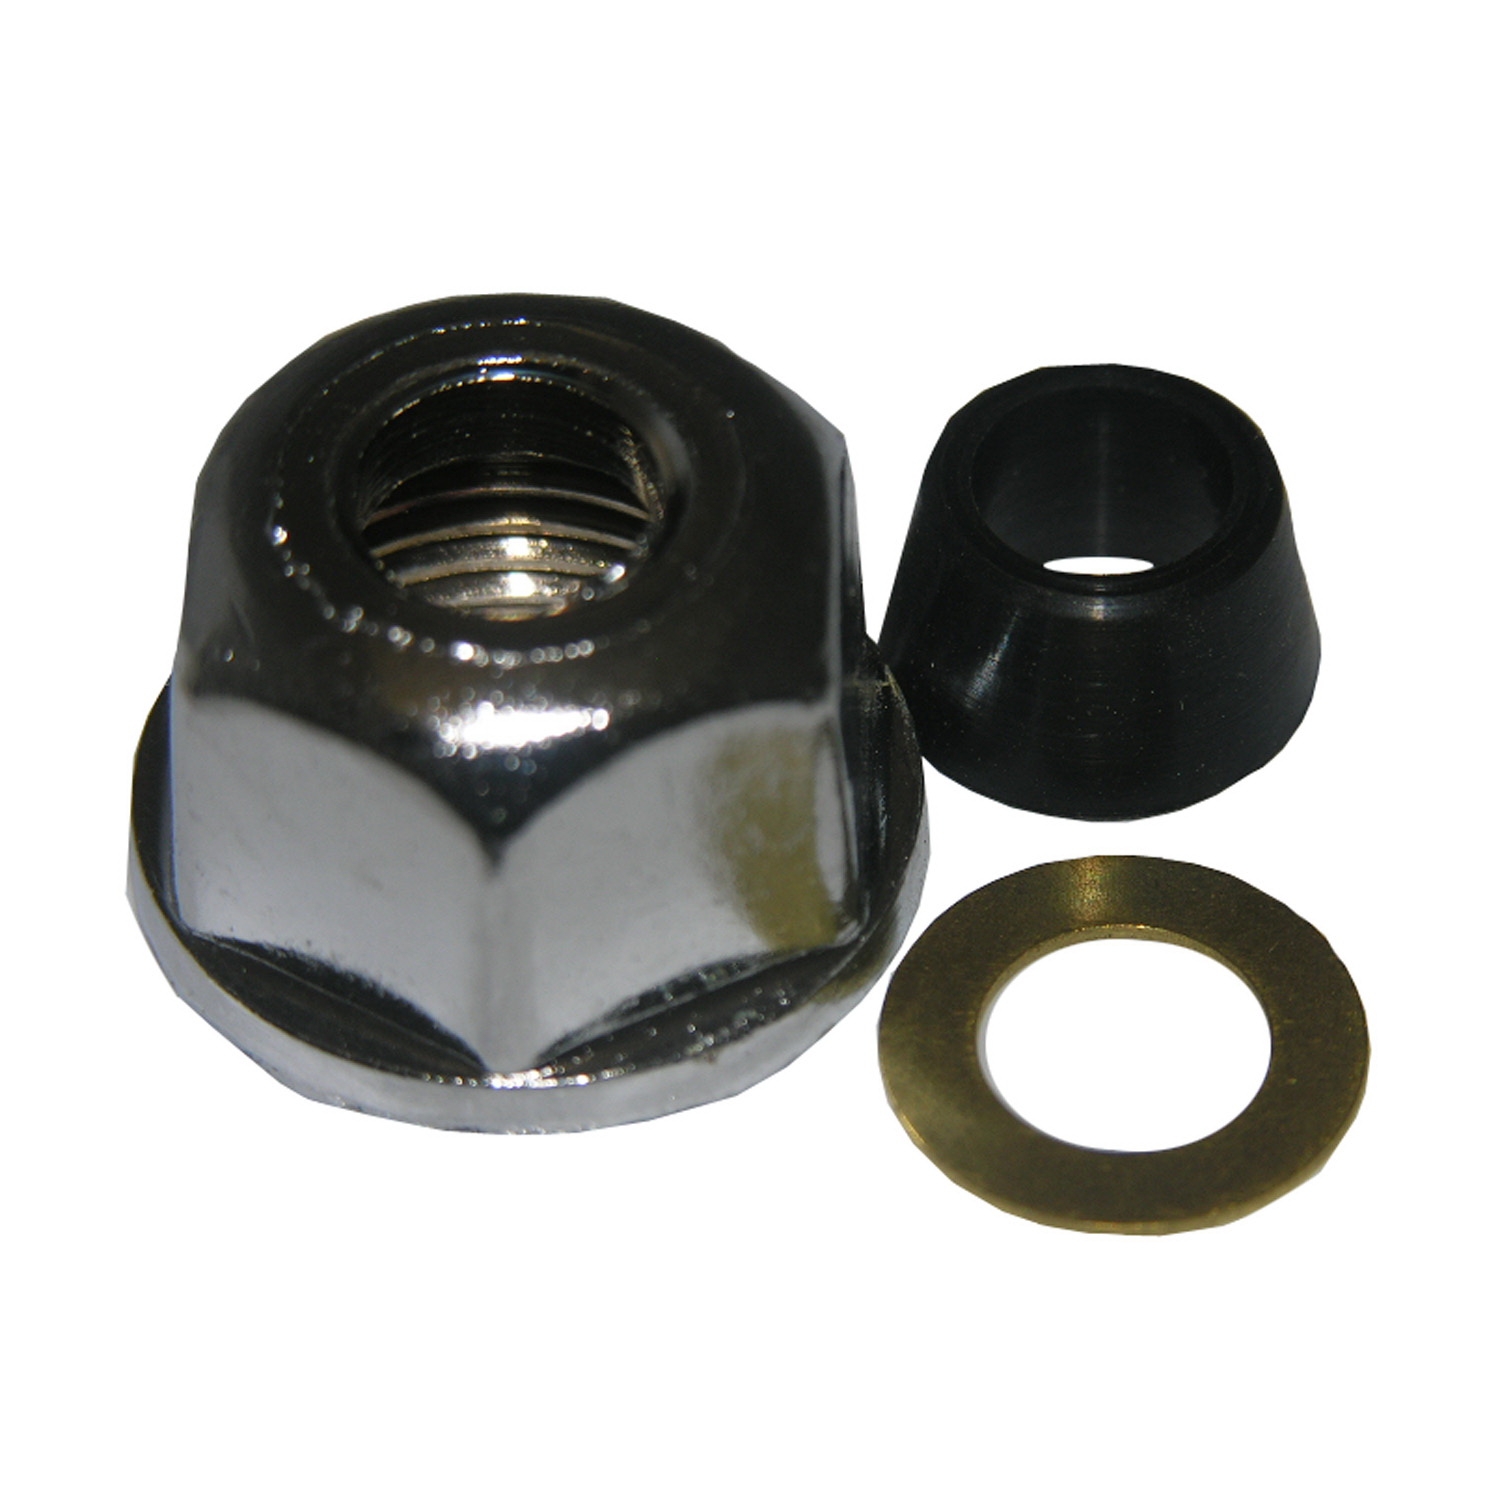 Lasco 03-1815 Slip-Joint Nut Kit, Chrome Plated